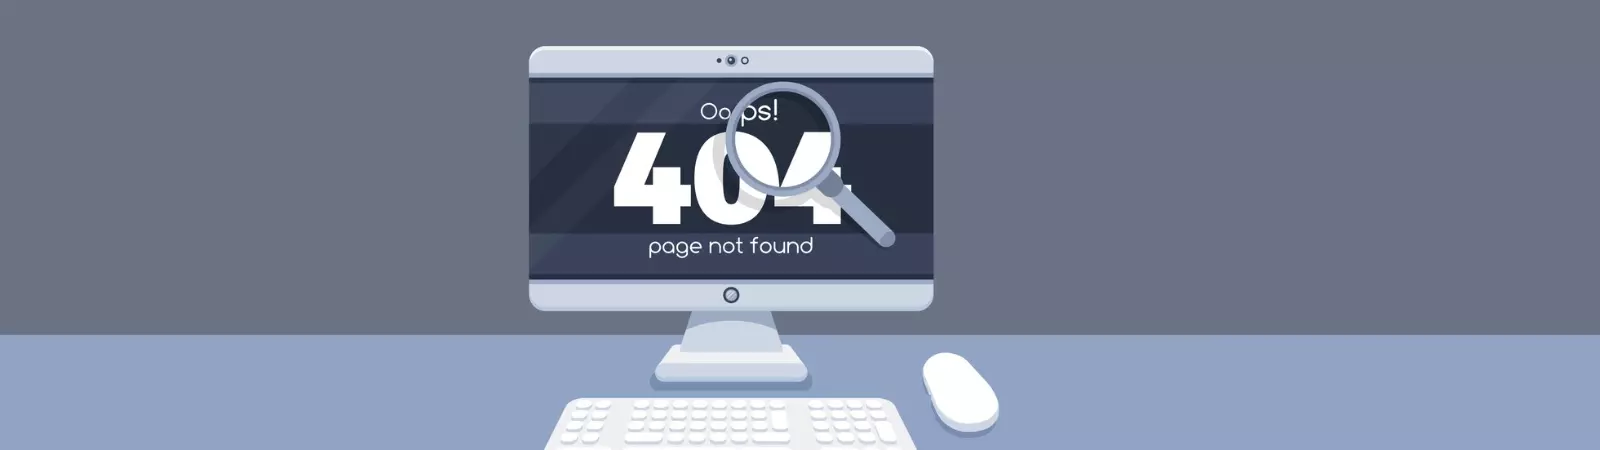 Jak vyřešit chybu 404 u WordPressu 6.4 s PolyLang